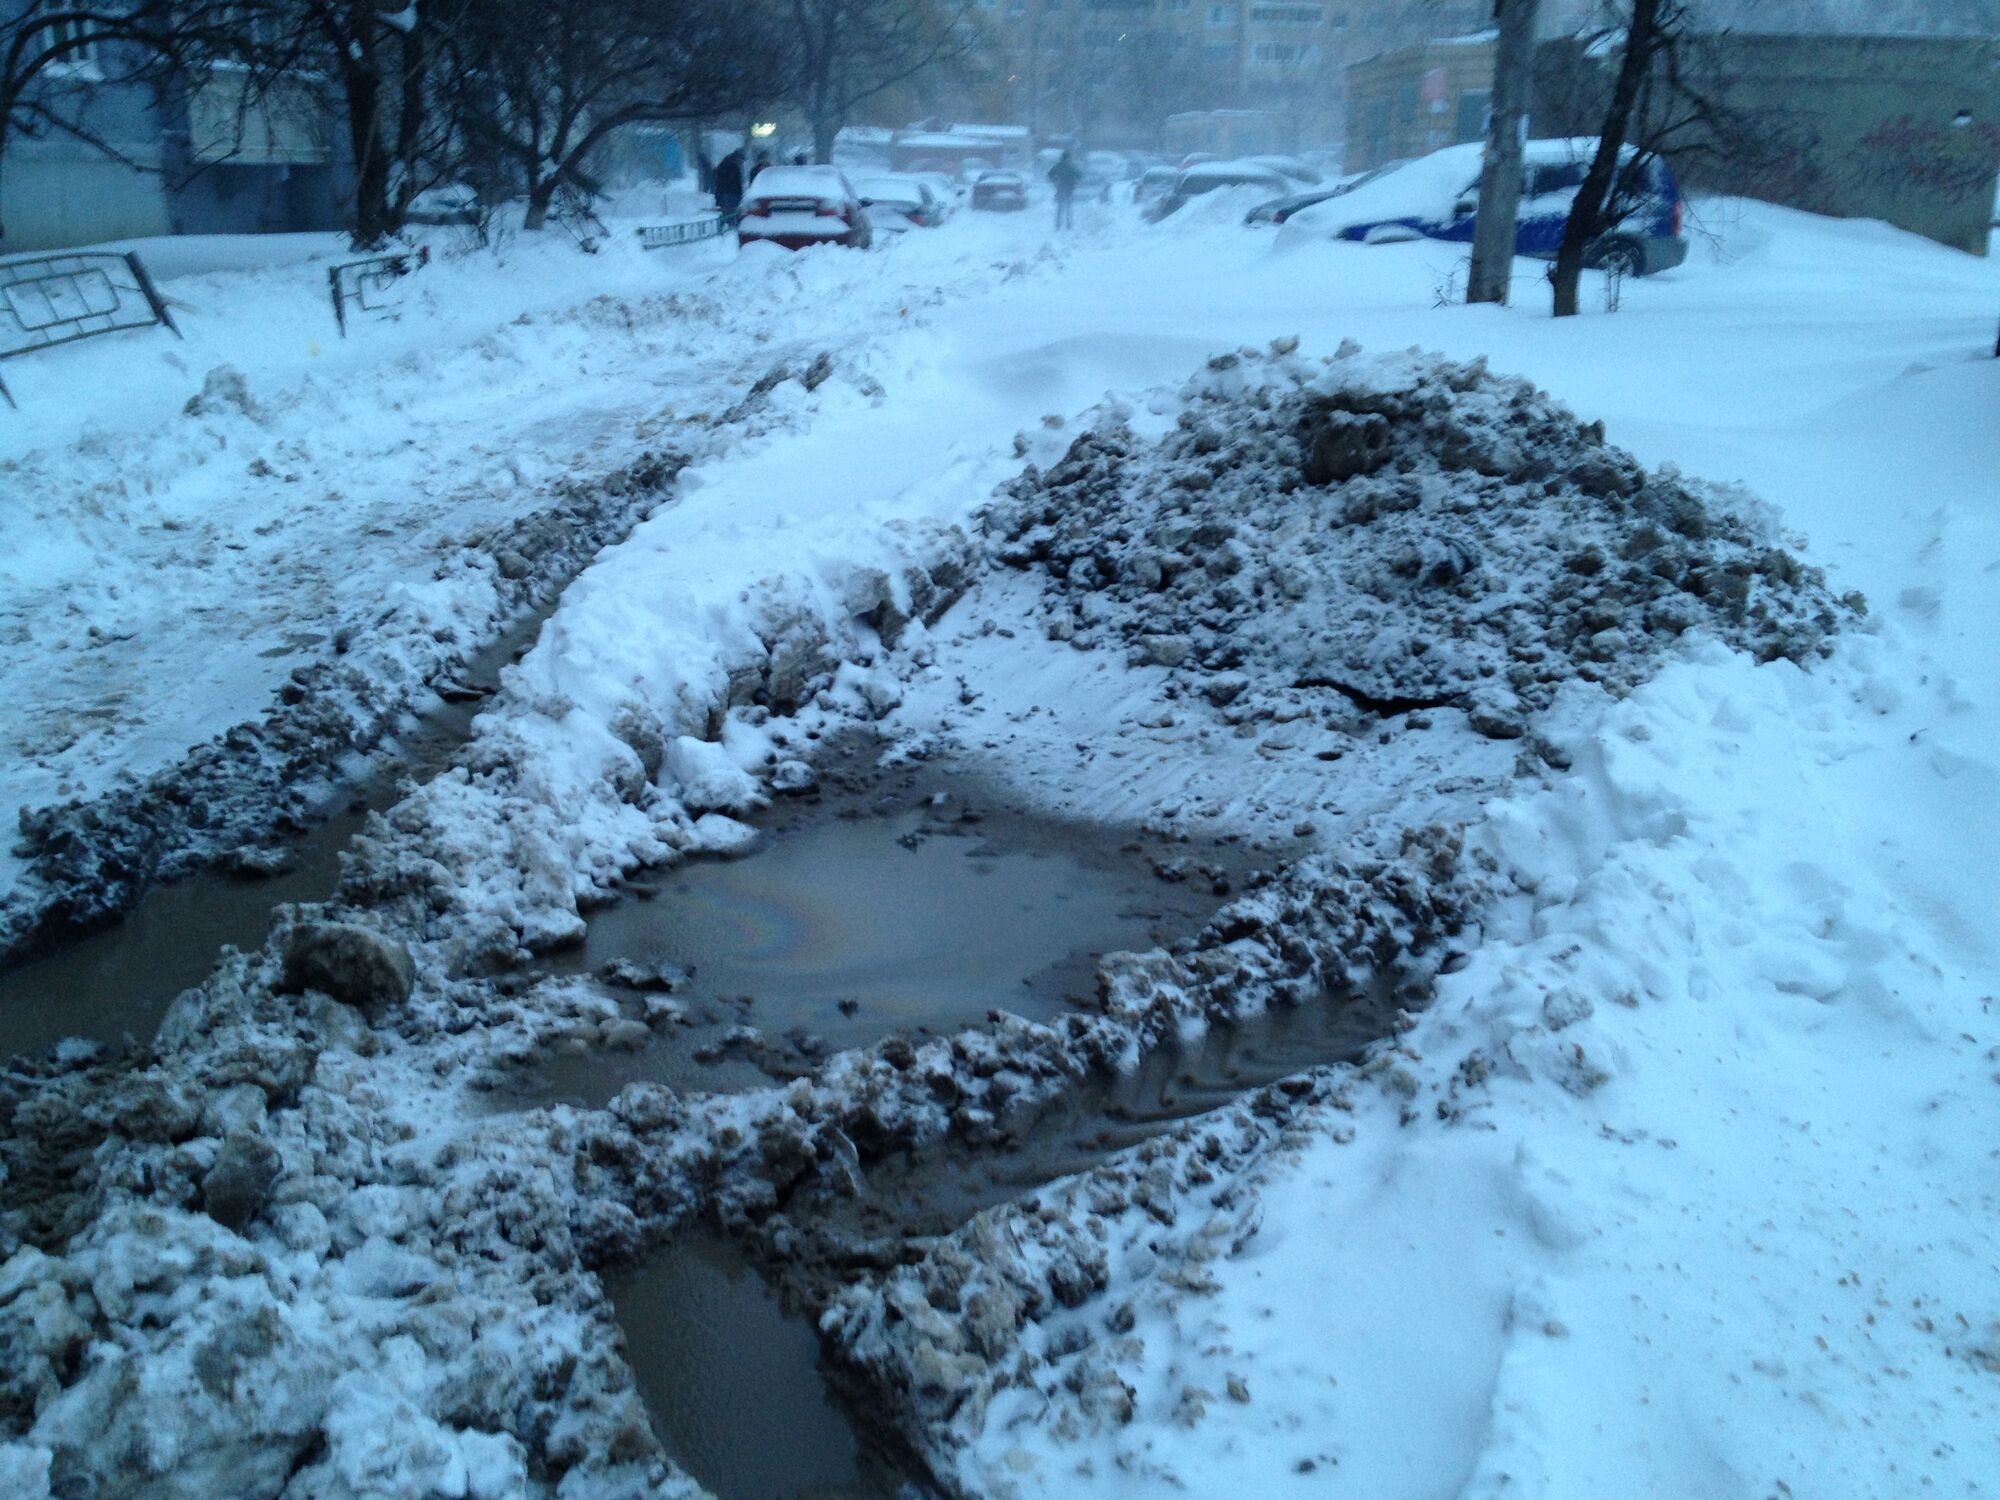 Київ під снігом